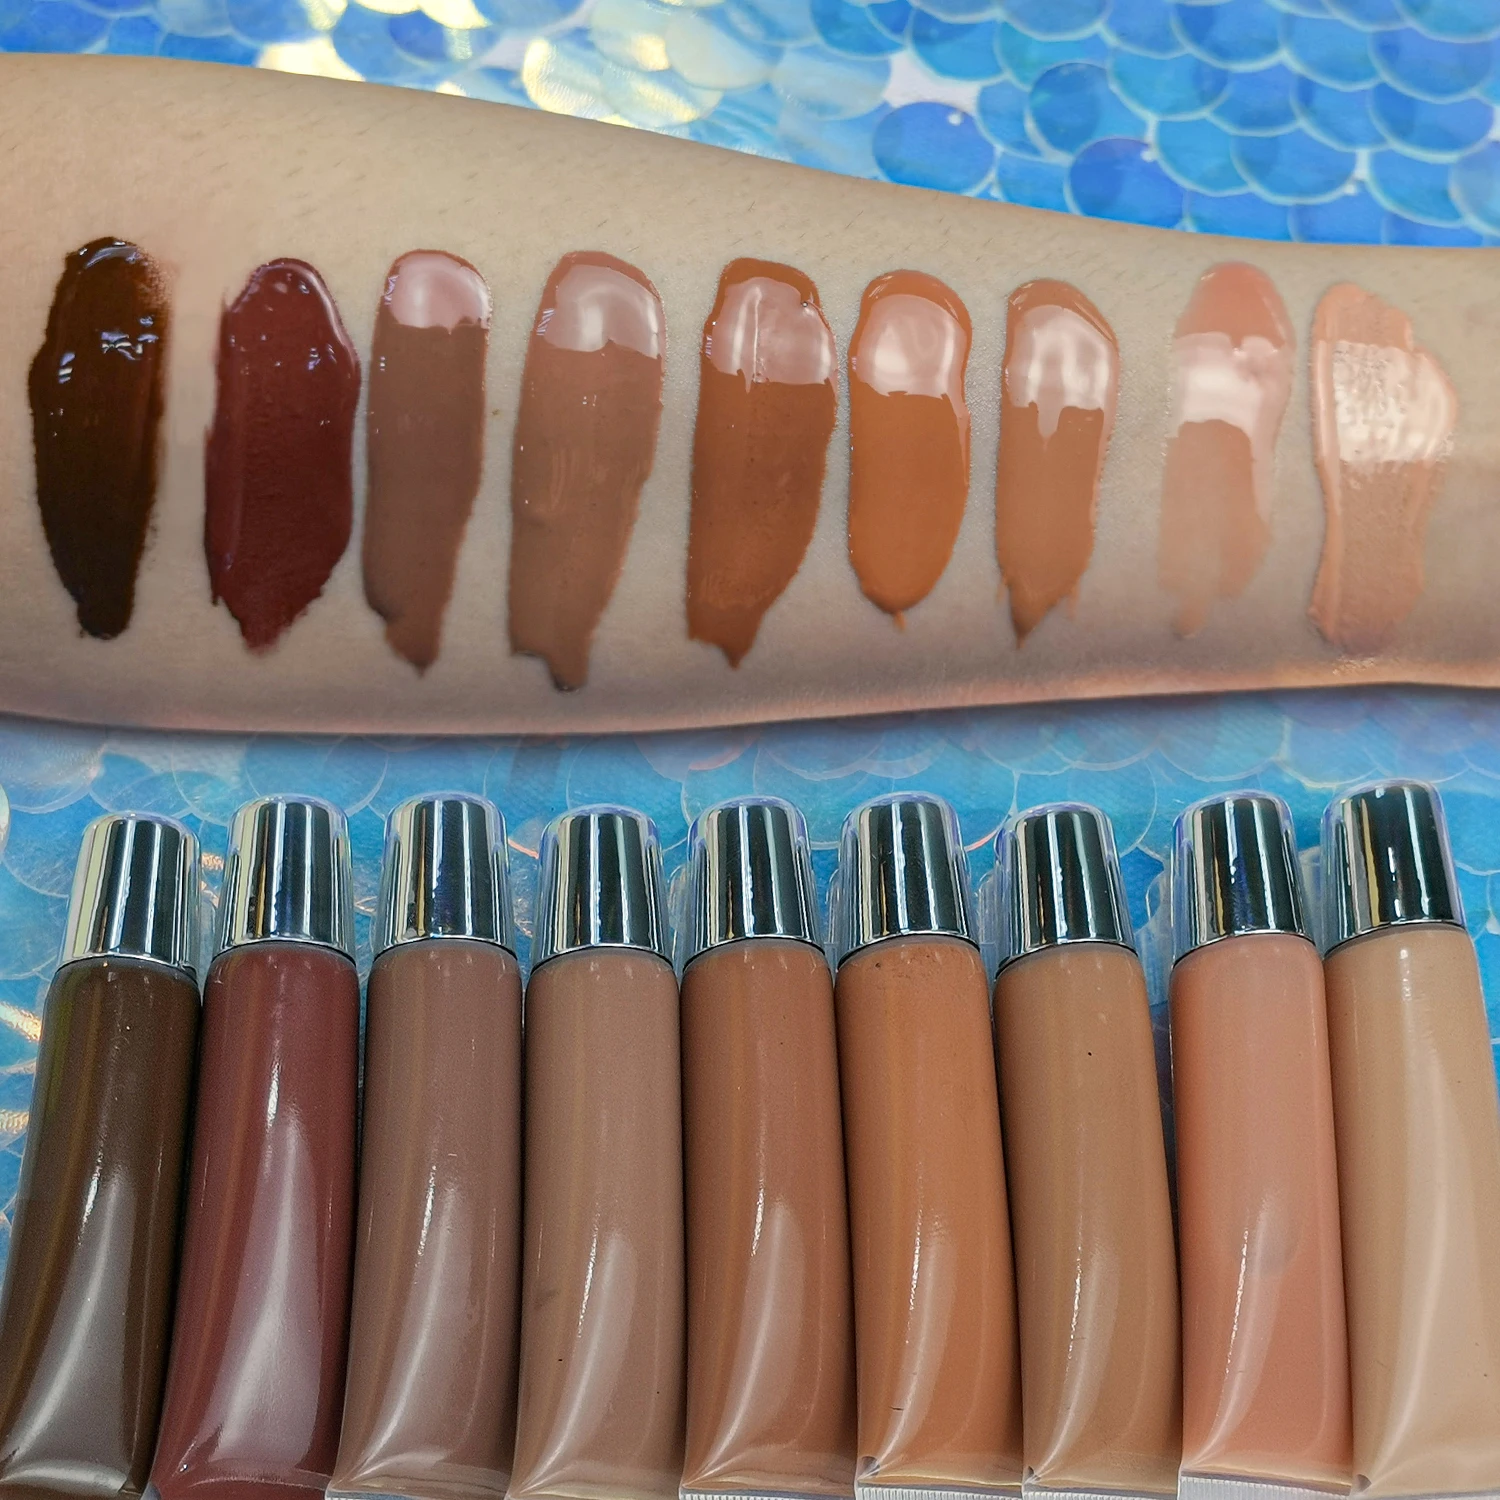 

High Shine Vegan Non-sticky Nude lip gloss private label squeeze lipgloss vendor